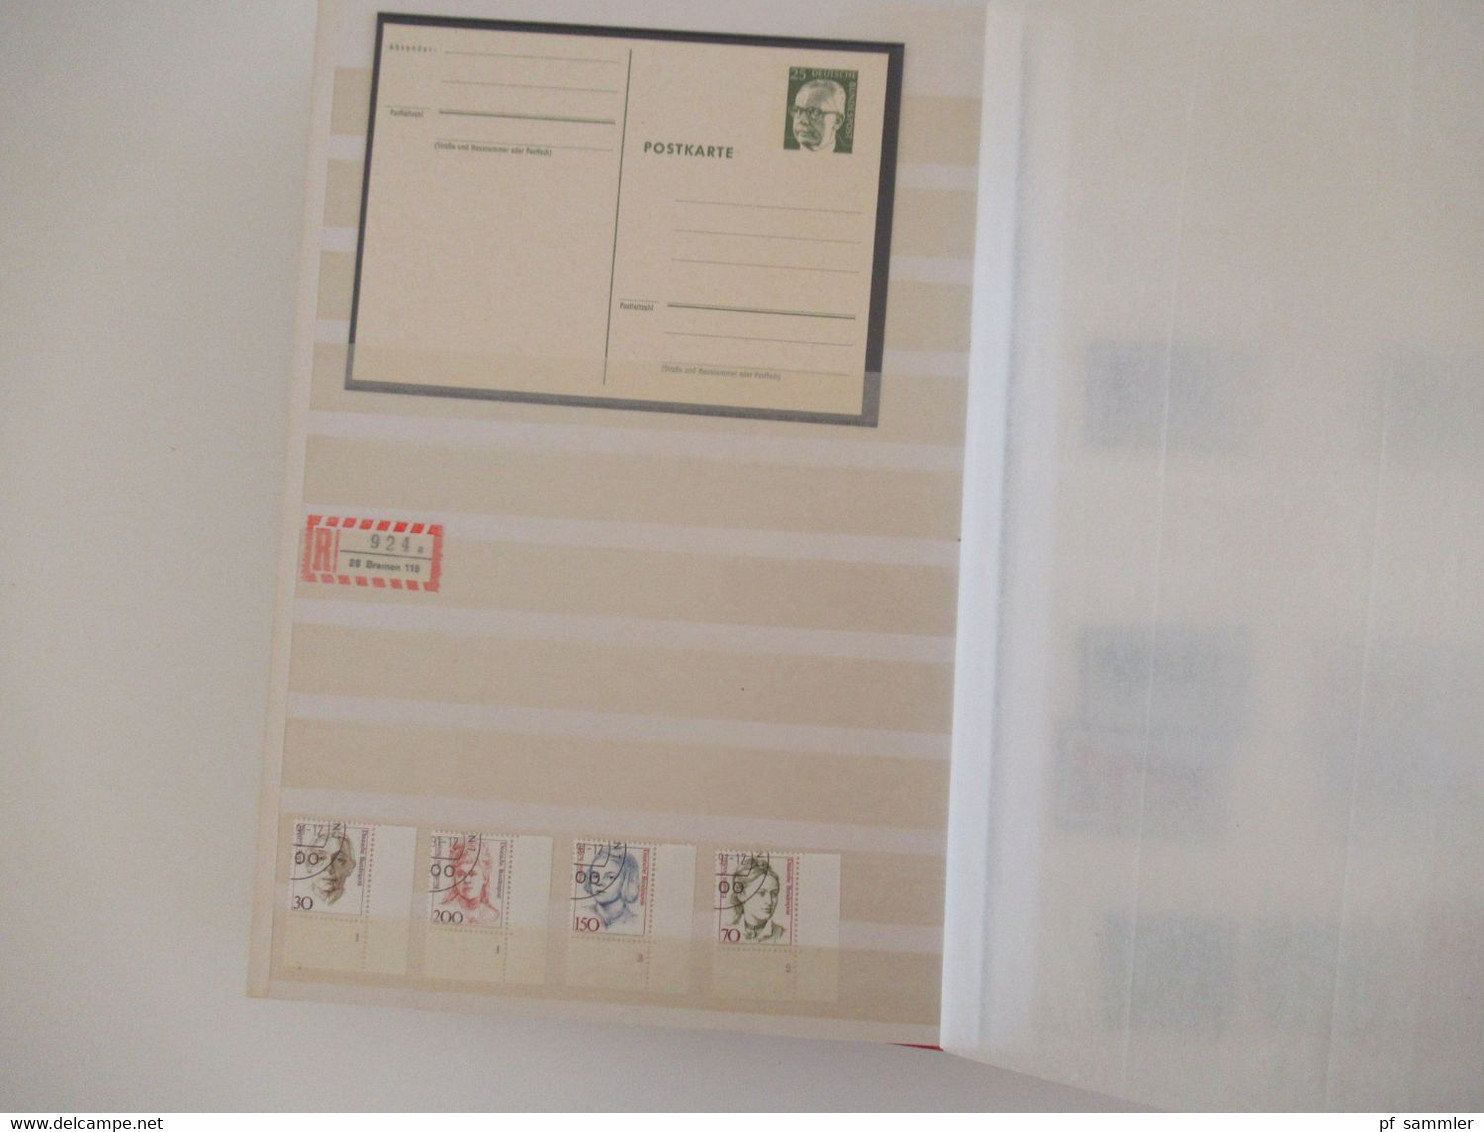 Dickes Steckbuch / Album BRD Und Berlin 1980er - 90er Jahre Wilde Mischung!! Etliche Ganzsachen / Doppelkarten + Blocks - Sammlungen (im Alben)